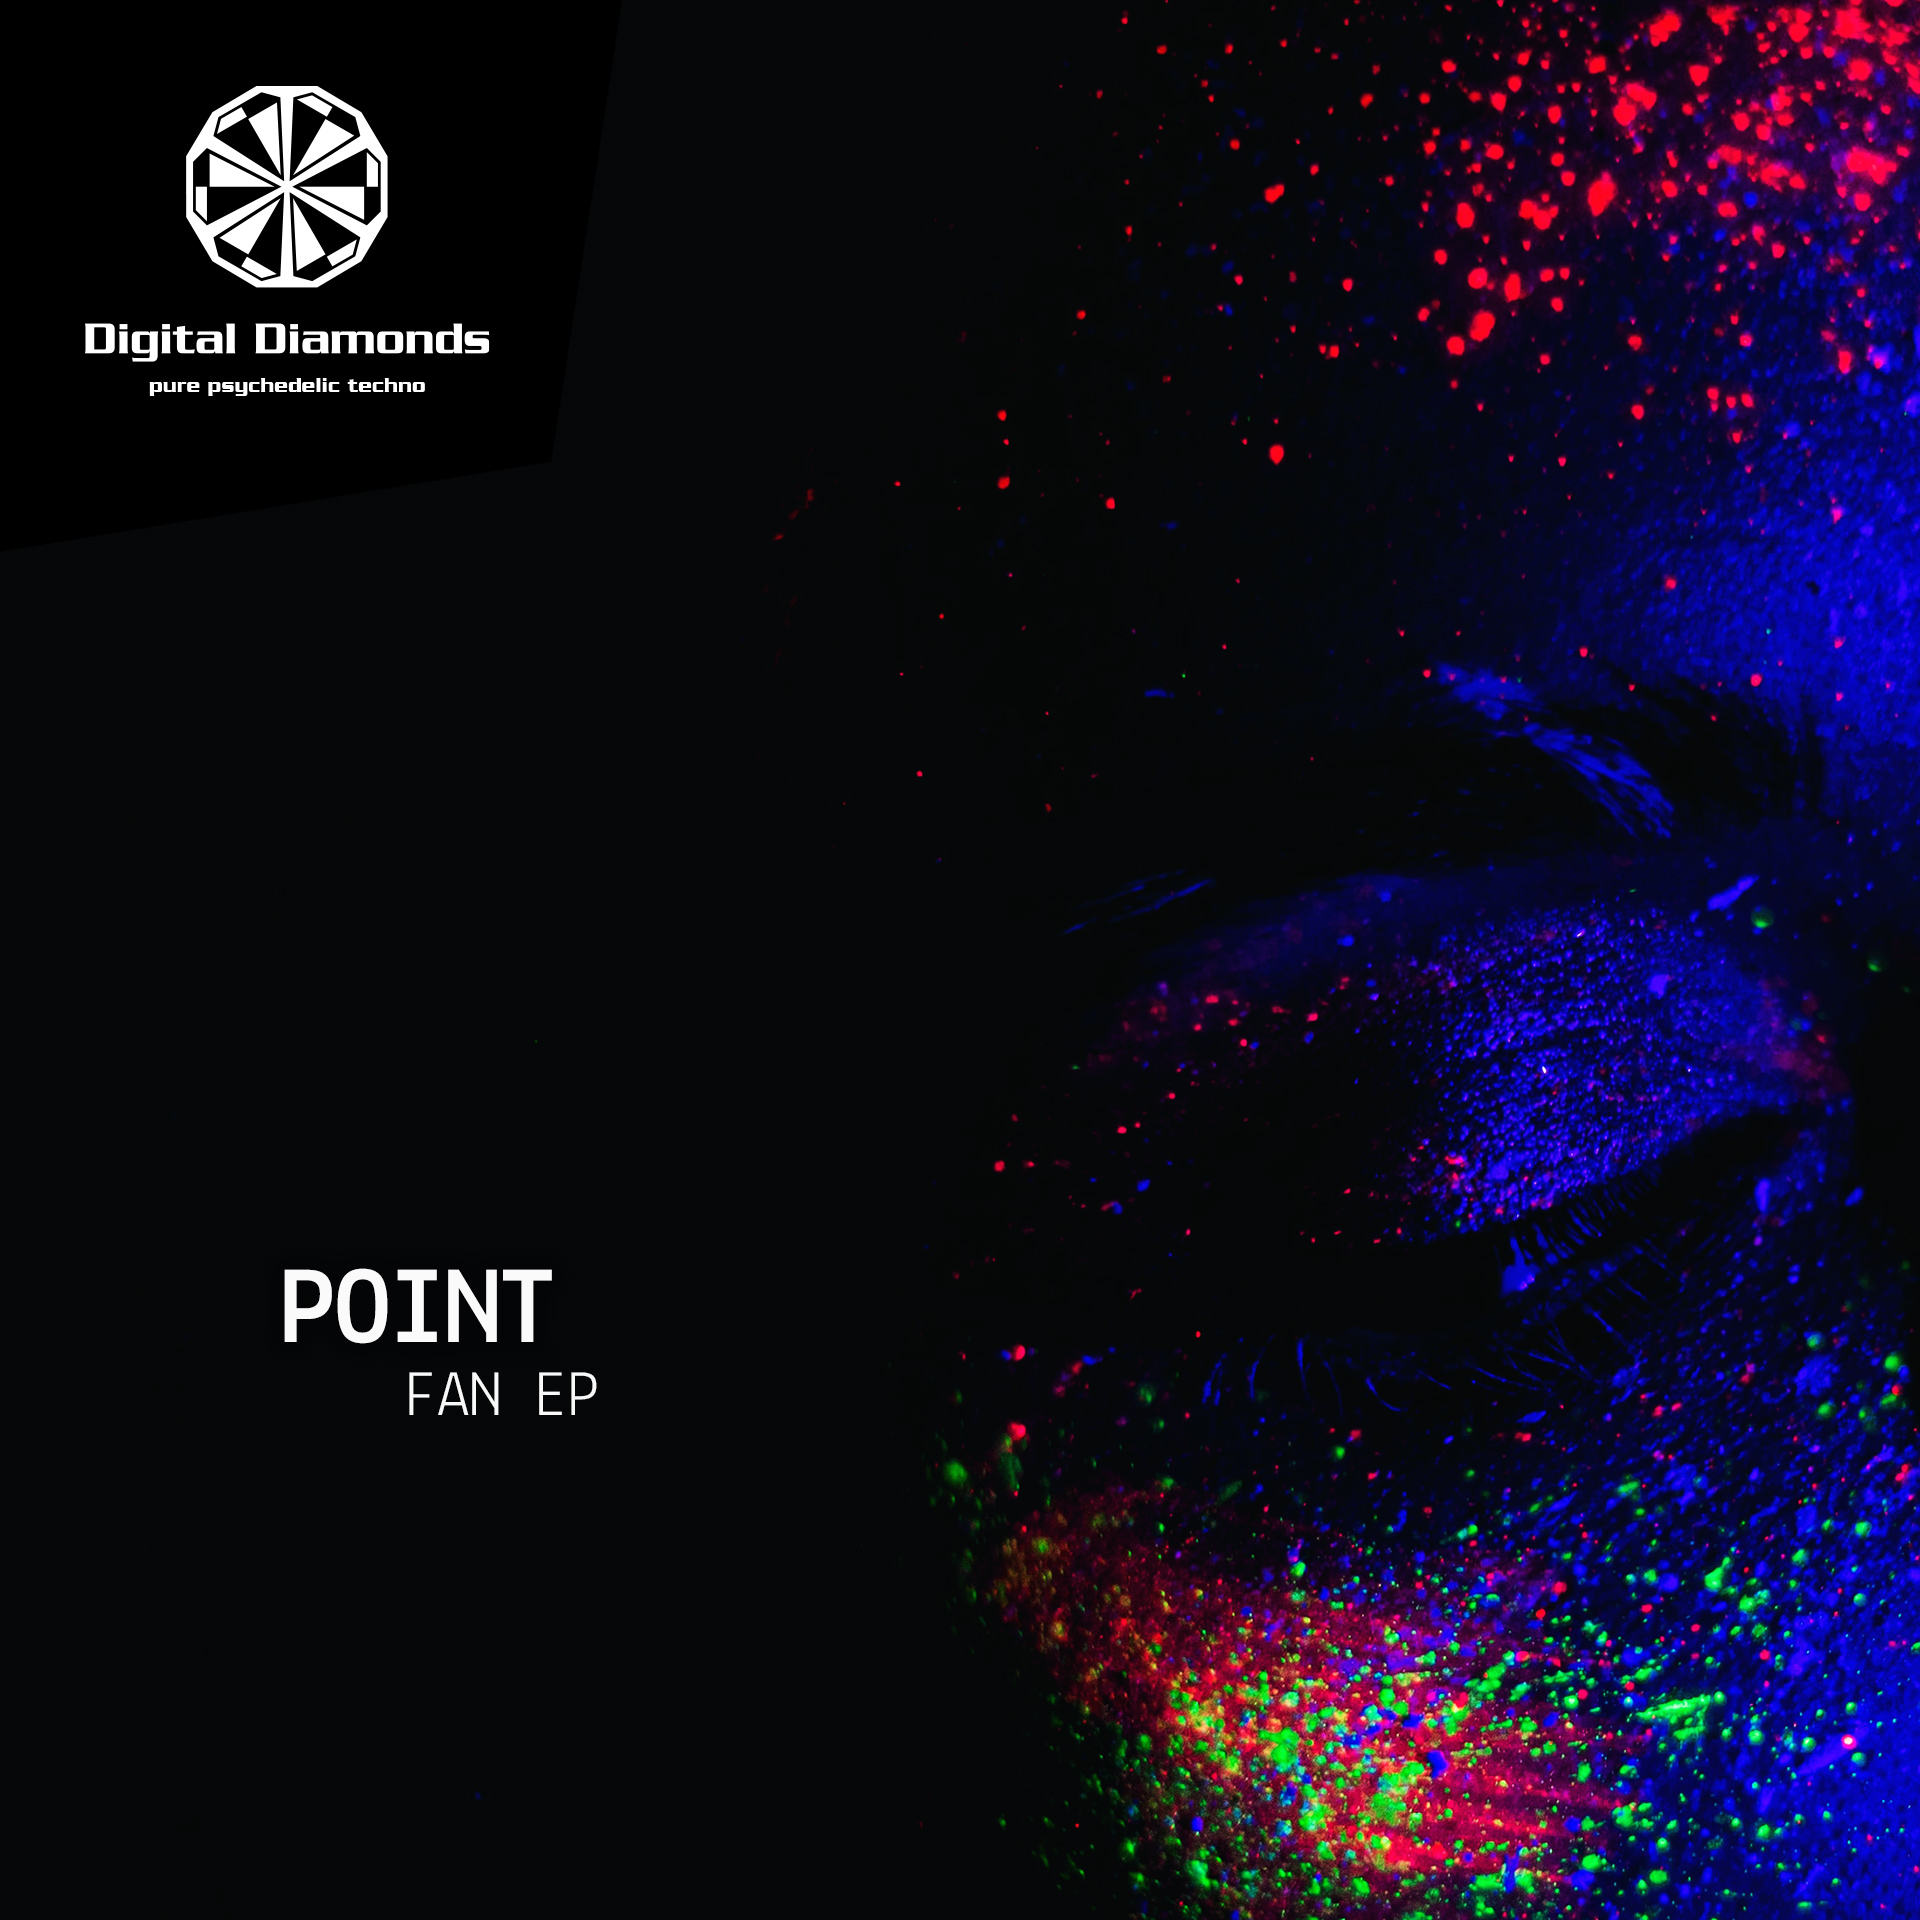 Point – Fan EP